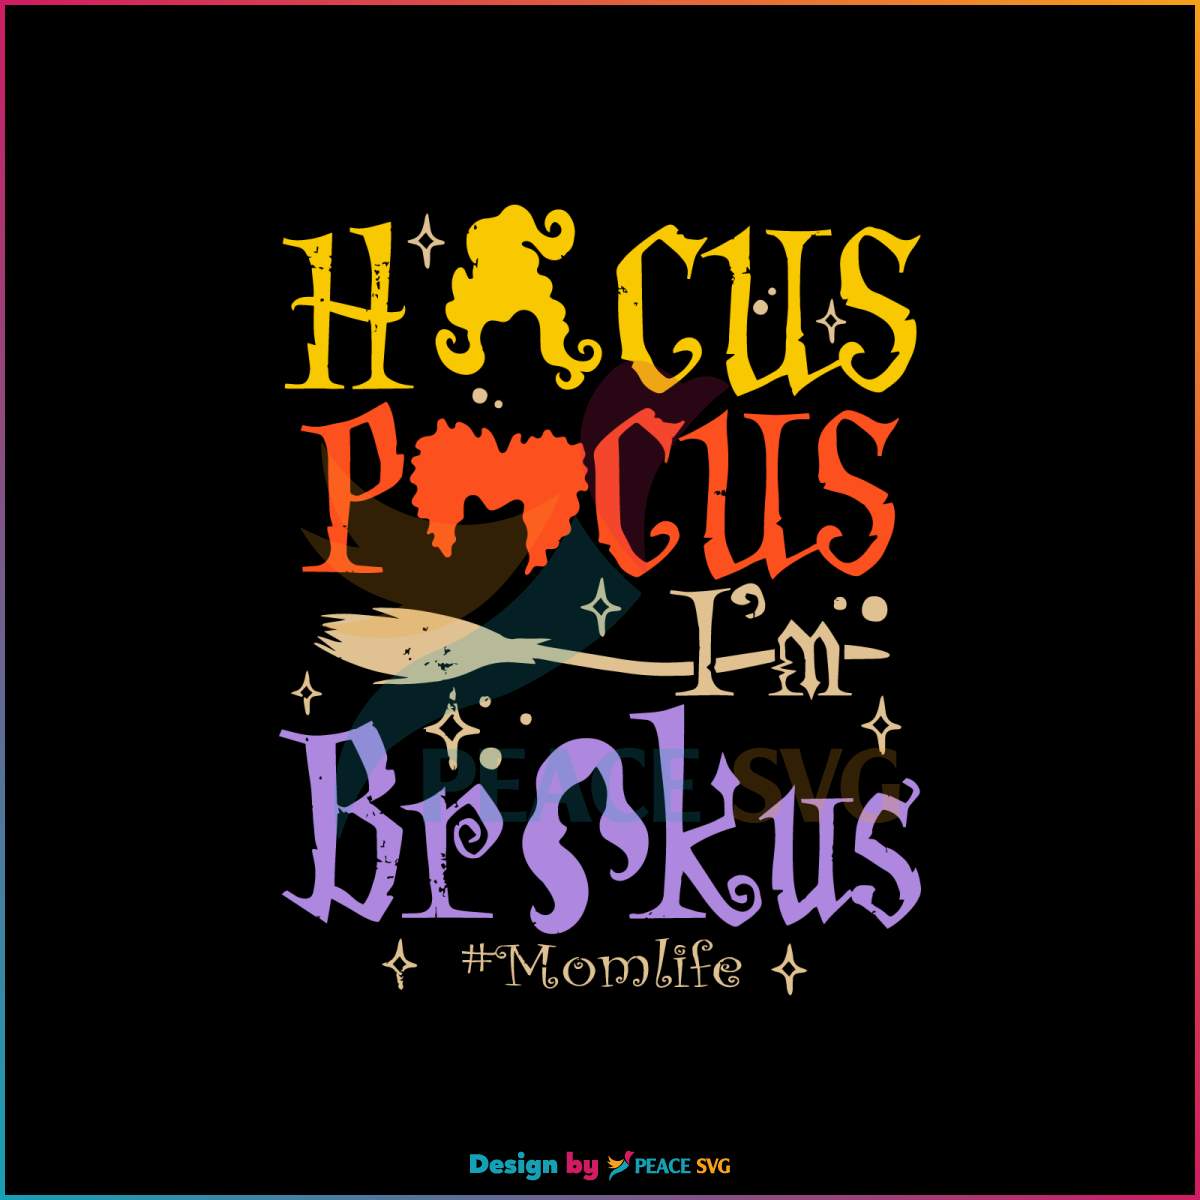 hocus-pocus-im-brokus-mom-life-svg-graphic-design-file